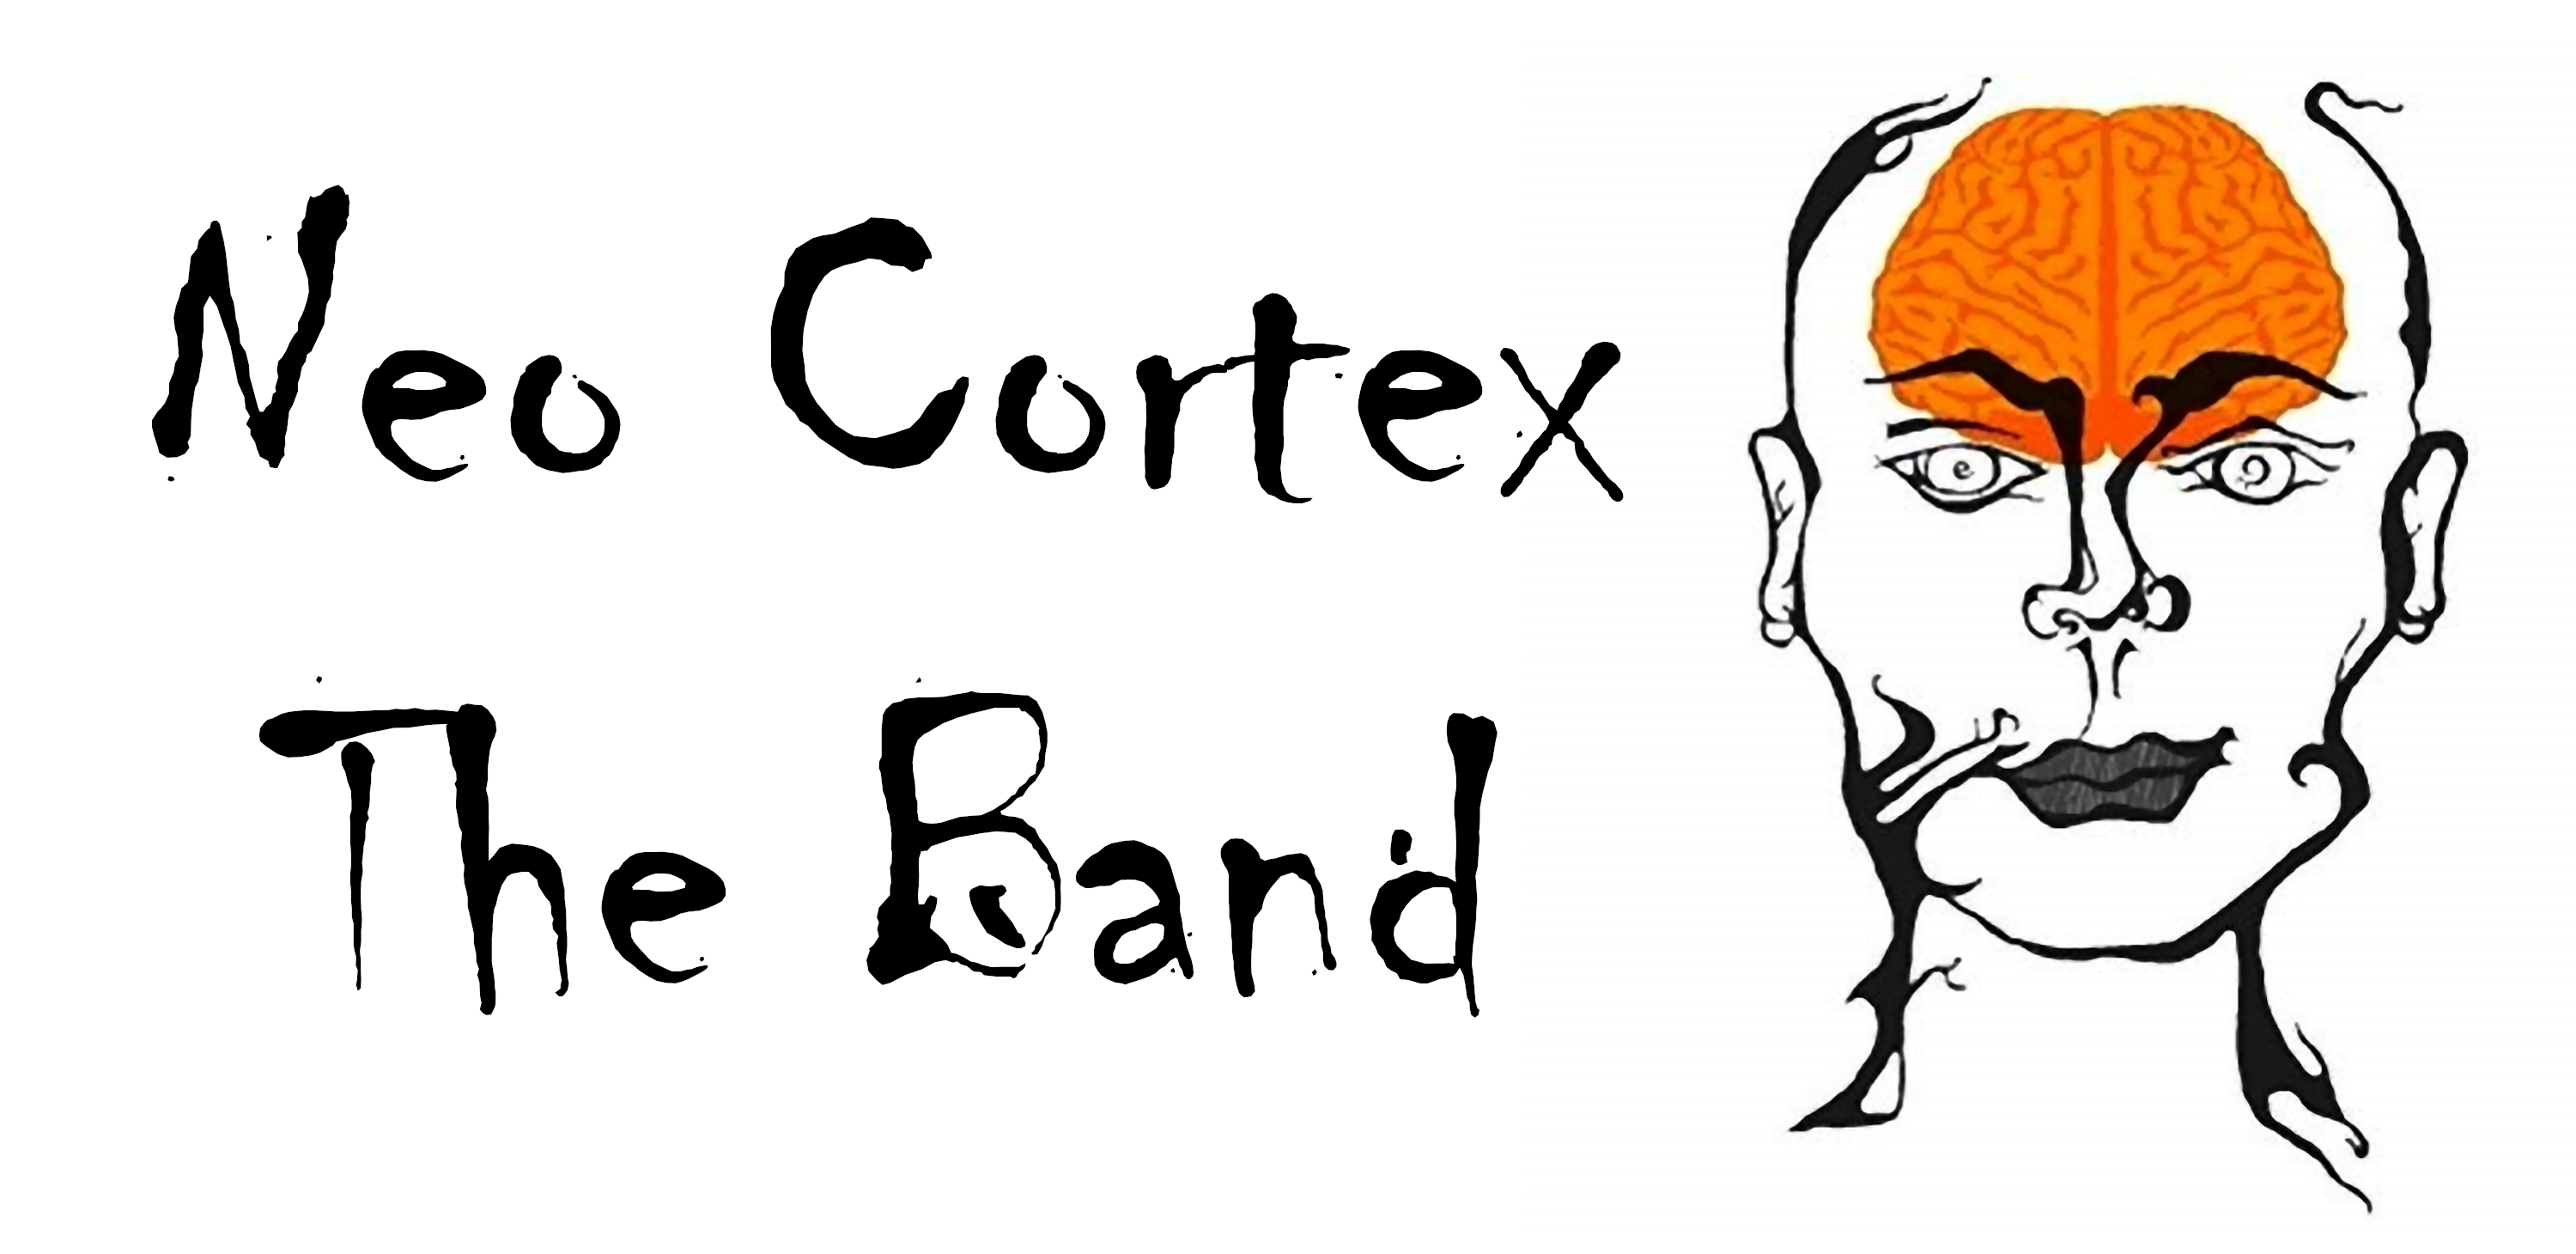 Neo Cortex - The Band